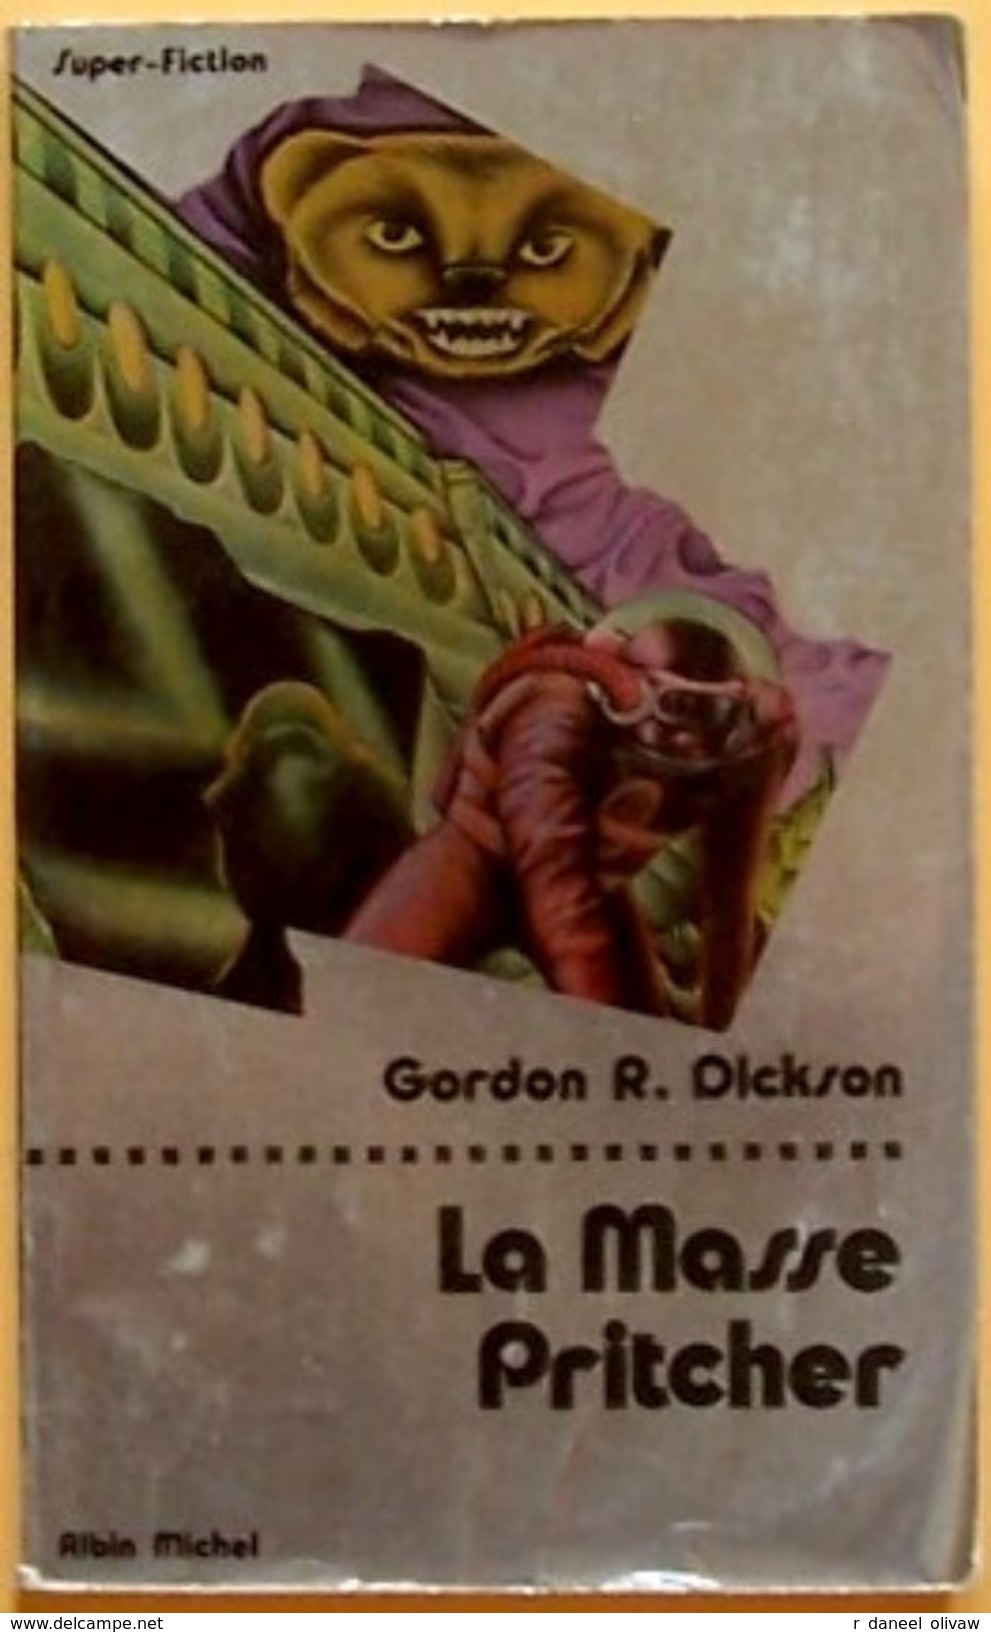 Super-Fiction 39 - DICKSON, Gordon R. - La Masse Pritcher (BE+) - Albin Michel